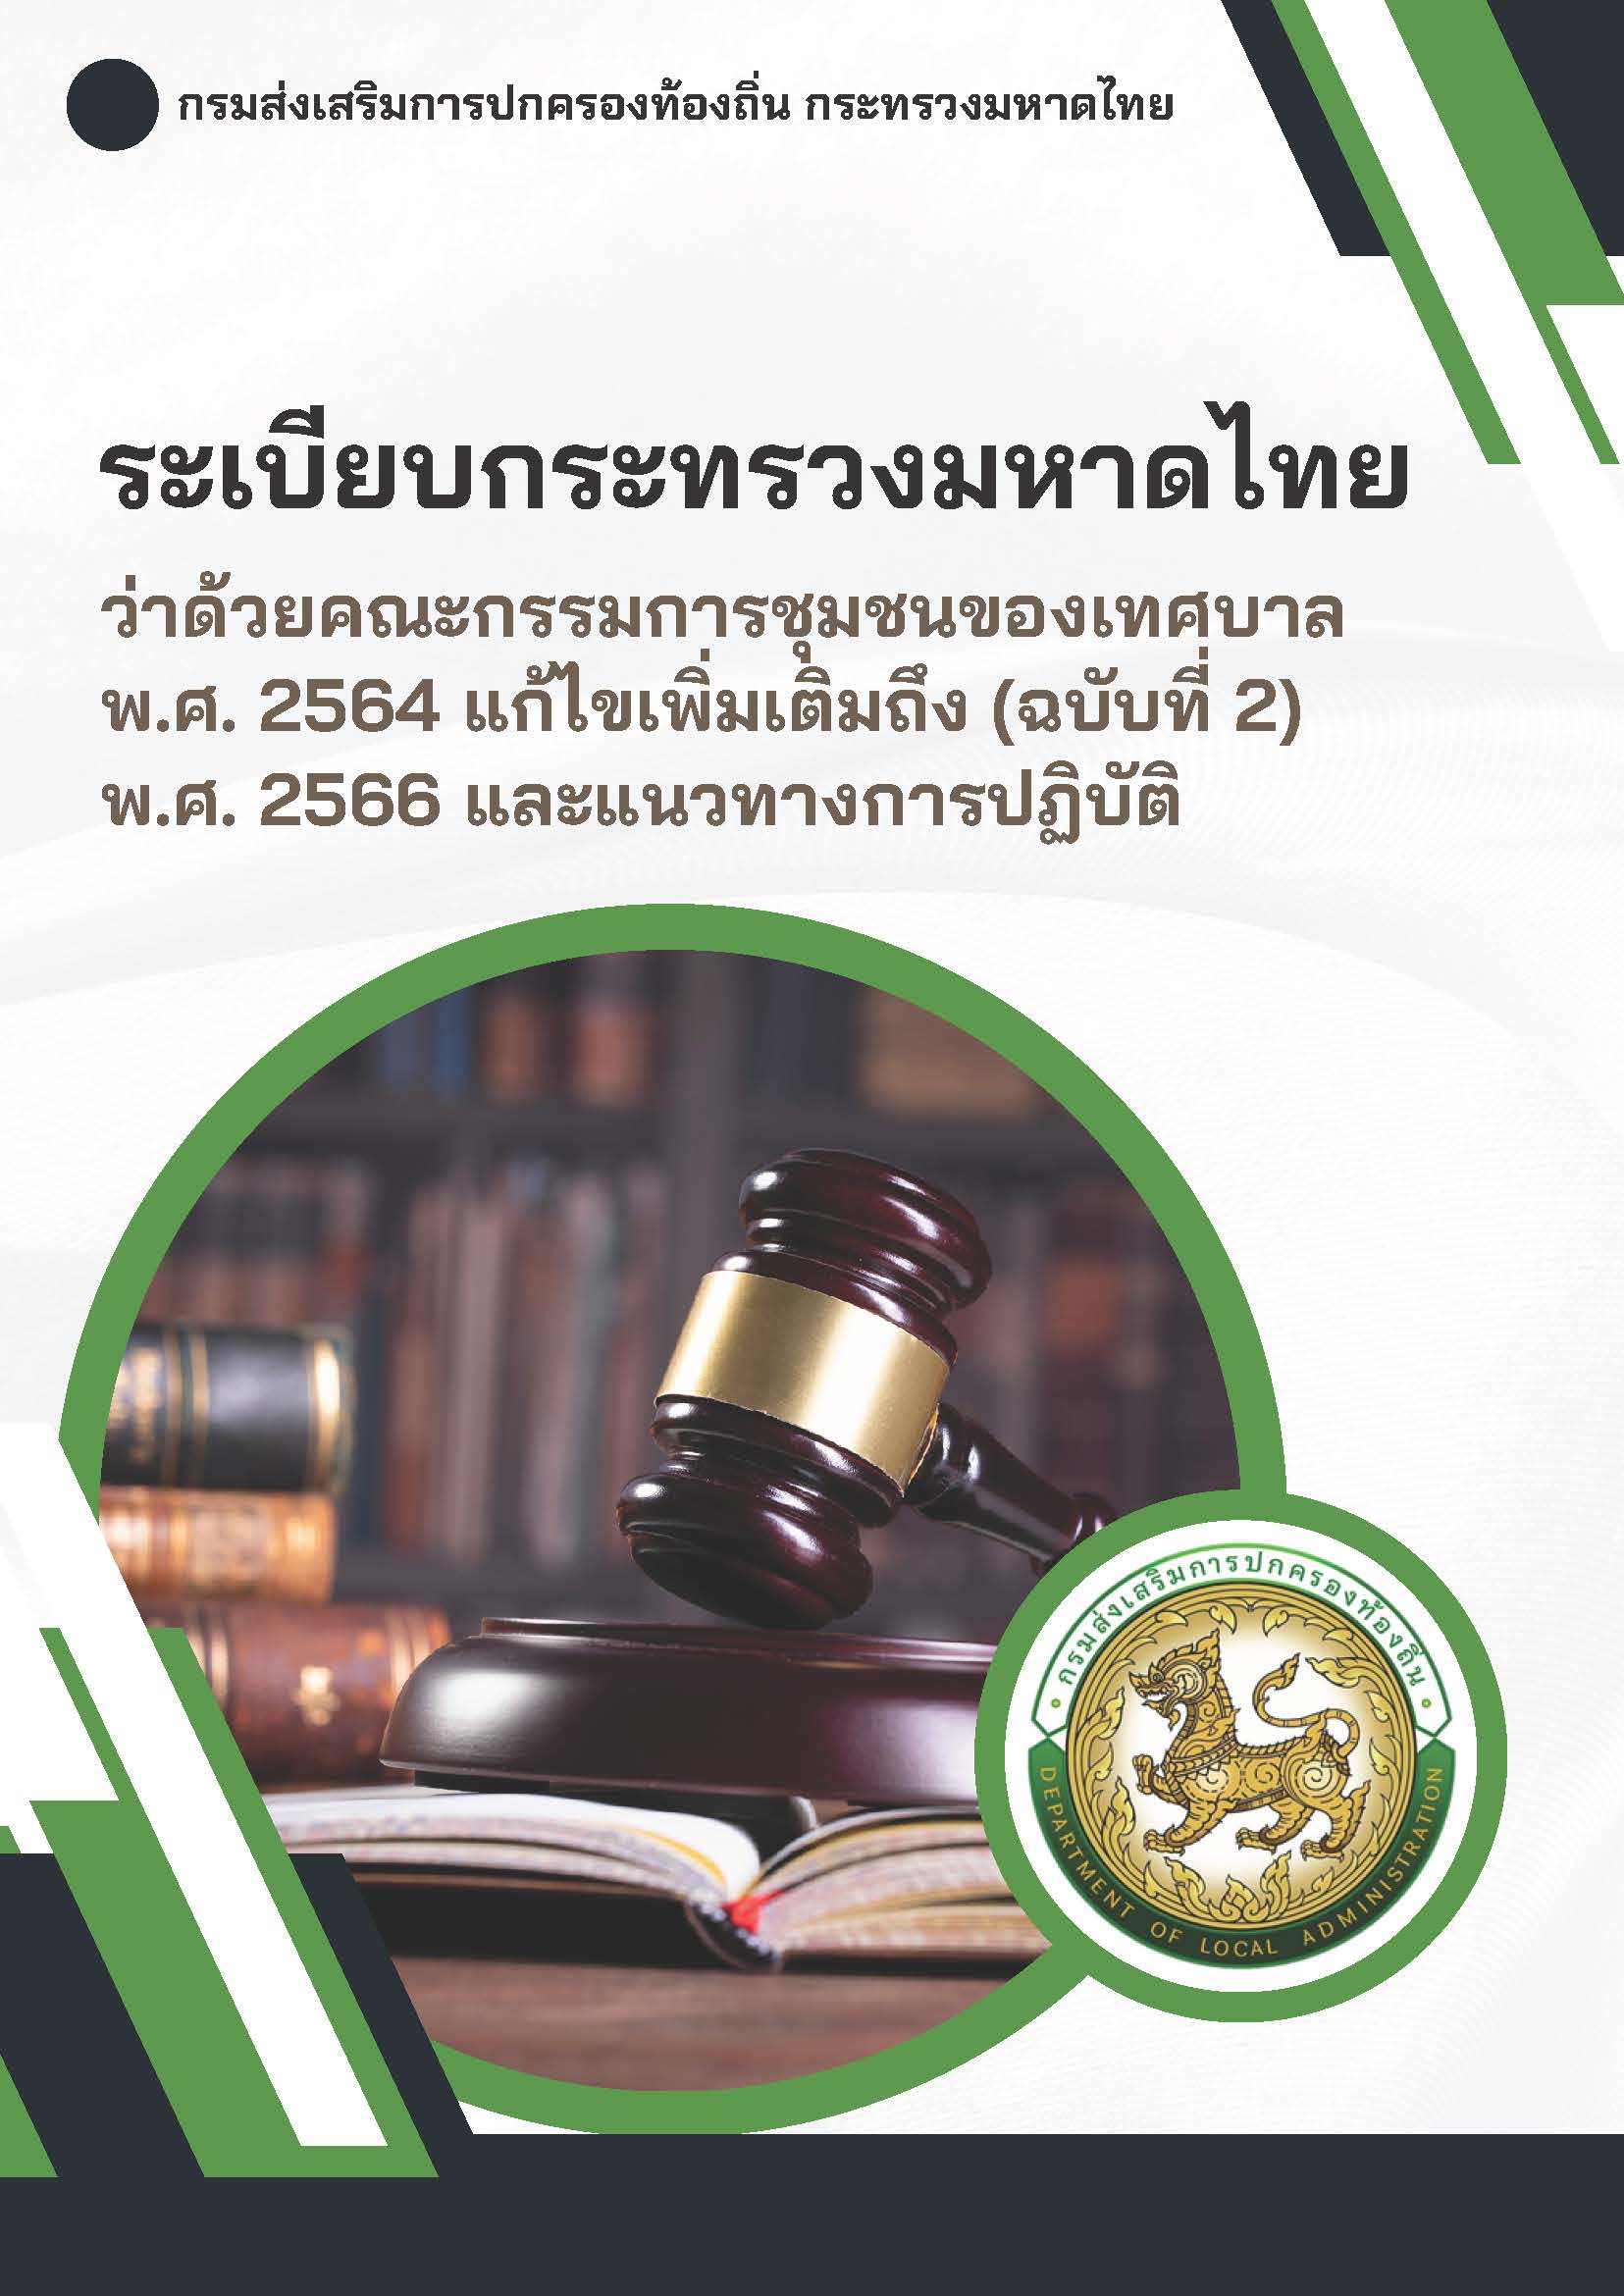 ระเบียบกระทรวงมหาดไทยว่าด้วยคณะกรรมการชุมชนของเทศบาล พ.ศ. 2564 แก้ไขเพิ่มเติมถึง (ฉบับที่ 2) พ.ศ. 2566 และแแนวทางการปฏิบัติ